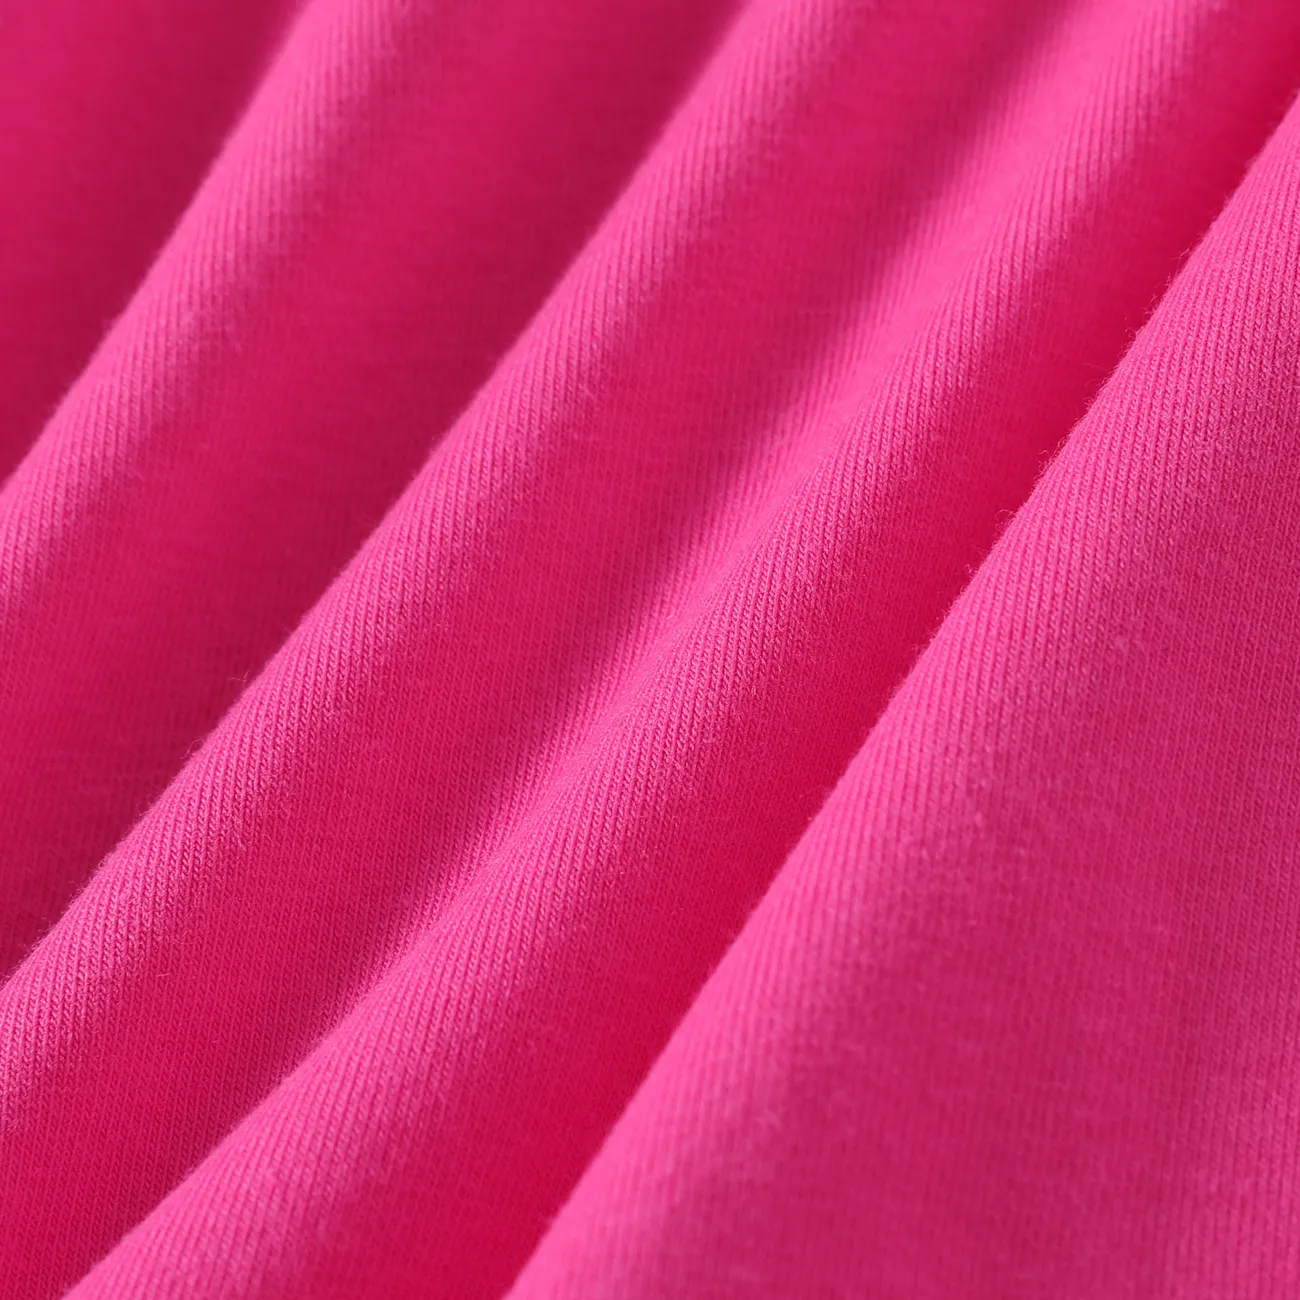 Toddler Girl Solid Curved Hem Short-sleeve Belted Dress Hot Pink big image 1